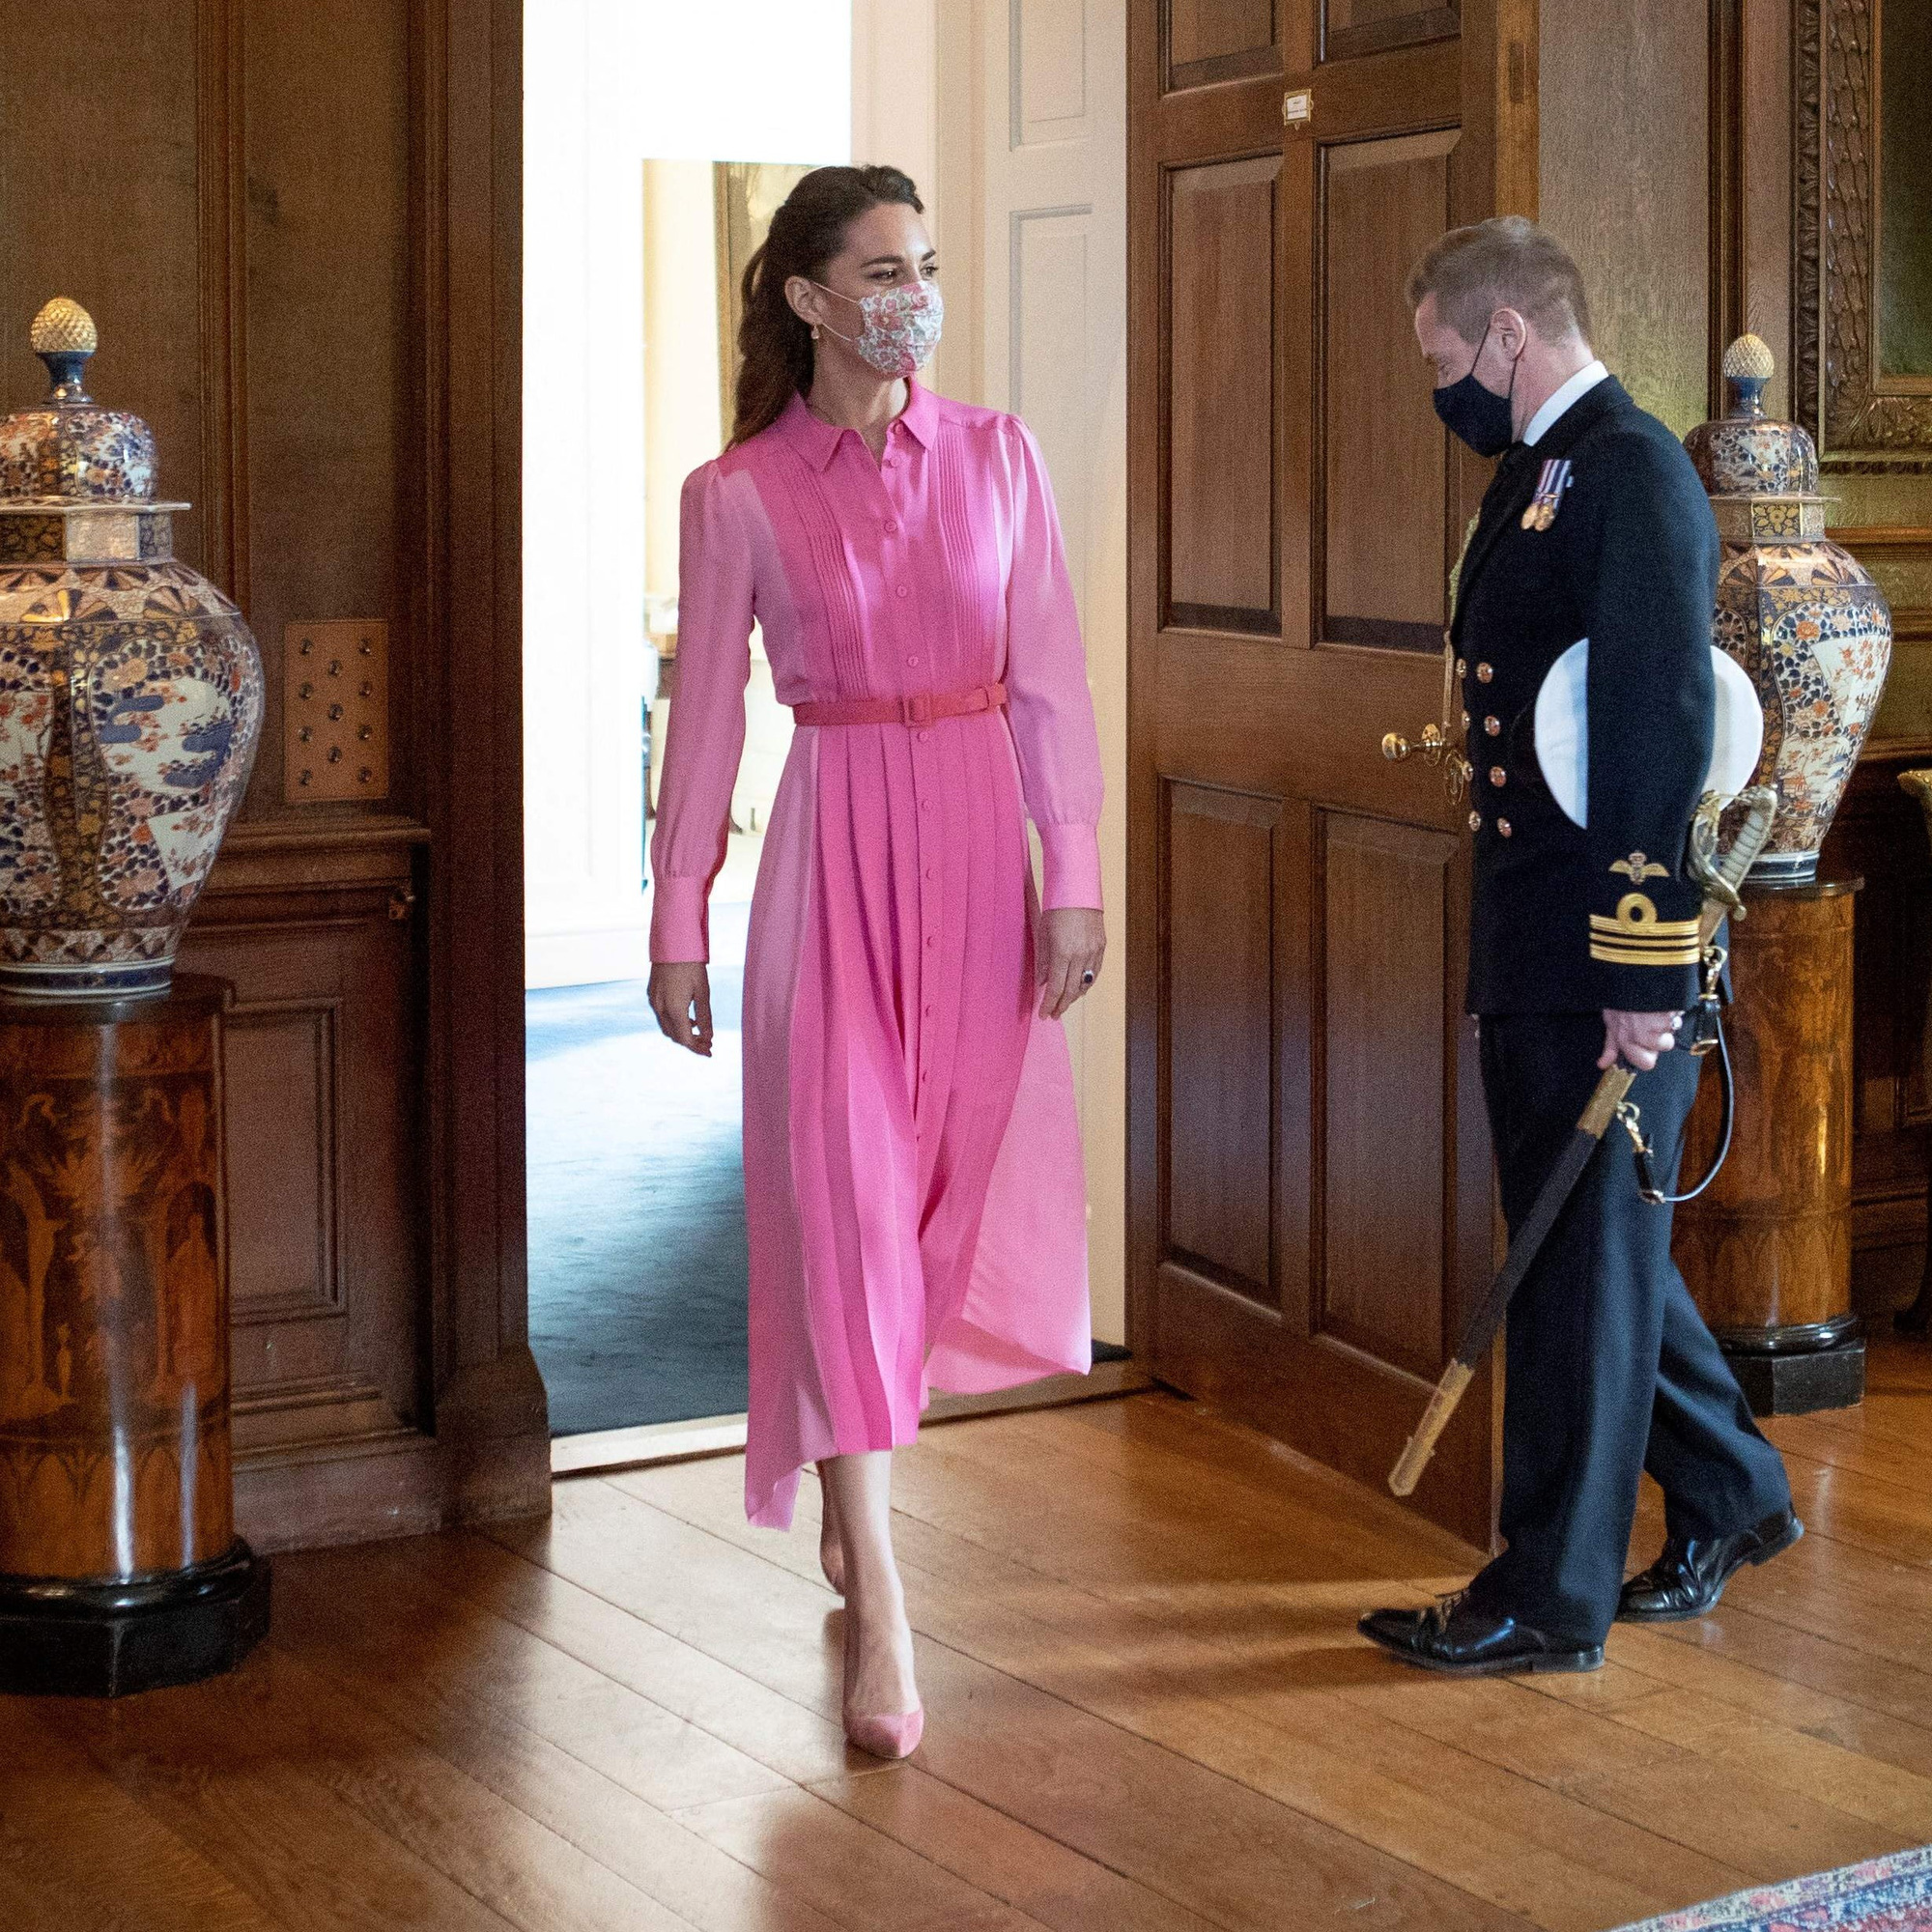 Nhìn hành trình thời trang 2021 của Kate Middleton mới thấy Meghan Markle chắc chắn không có cửa! - Ảnh 8.